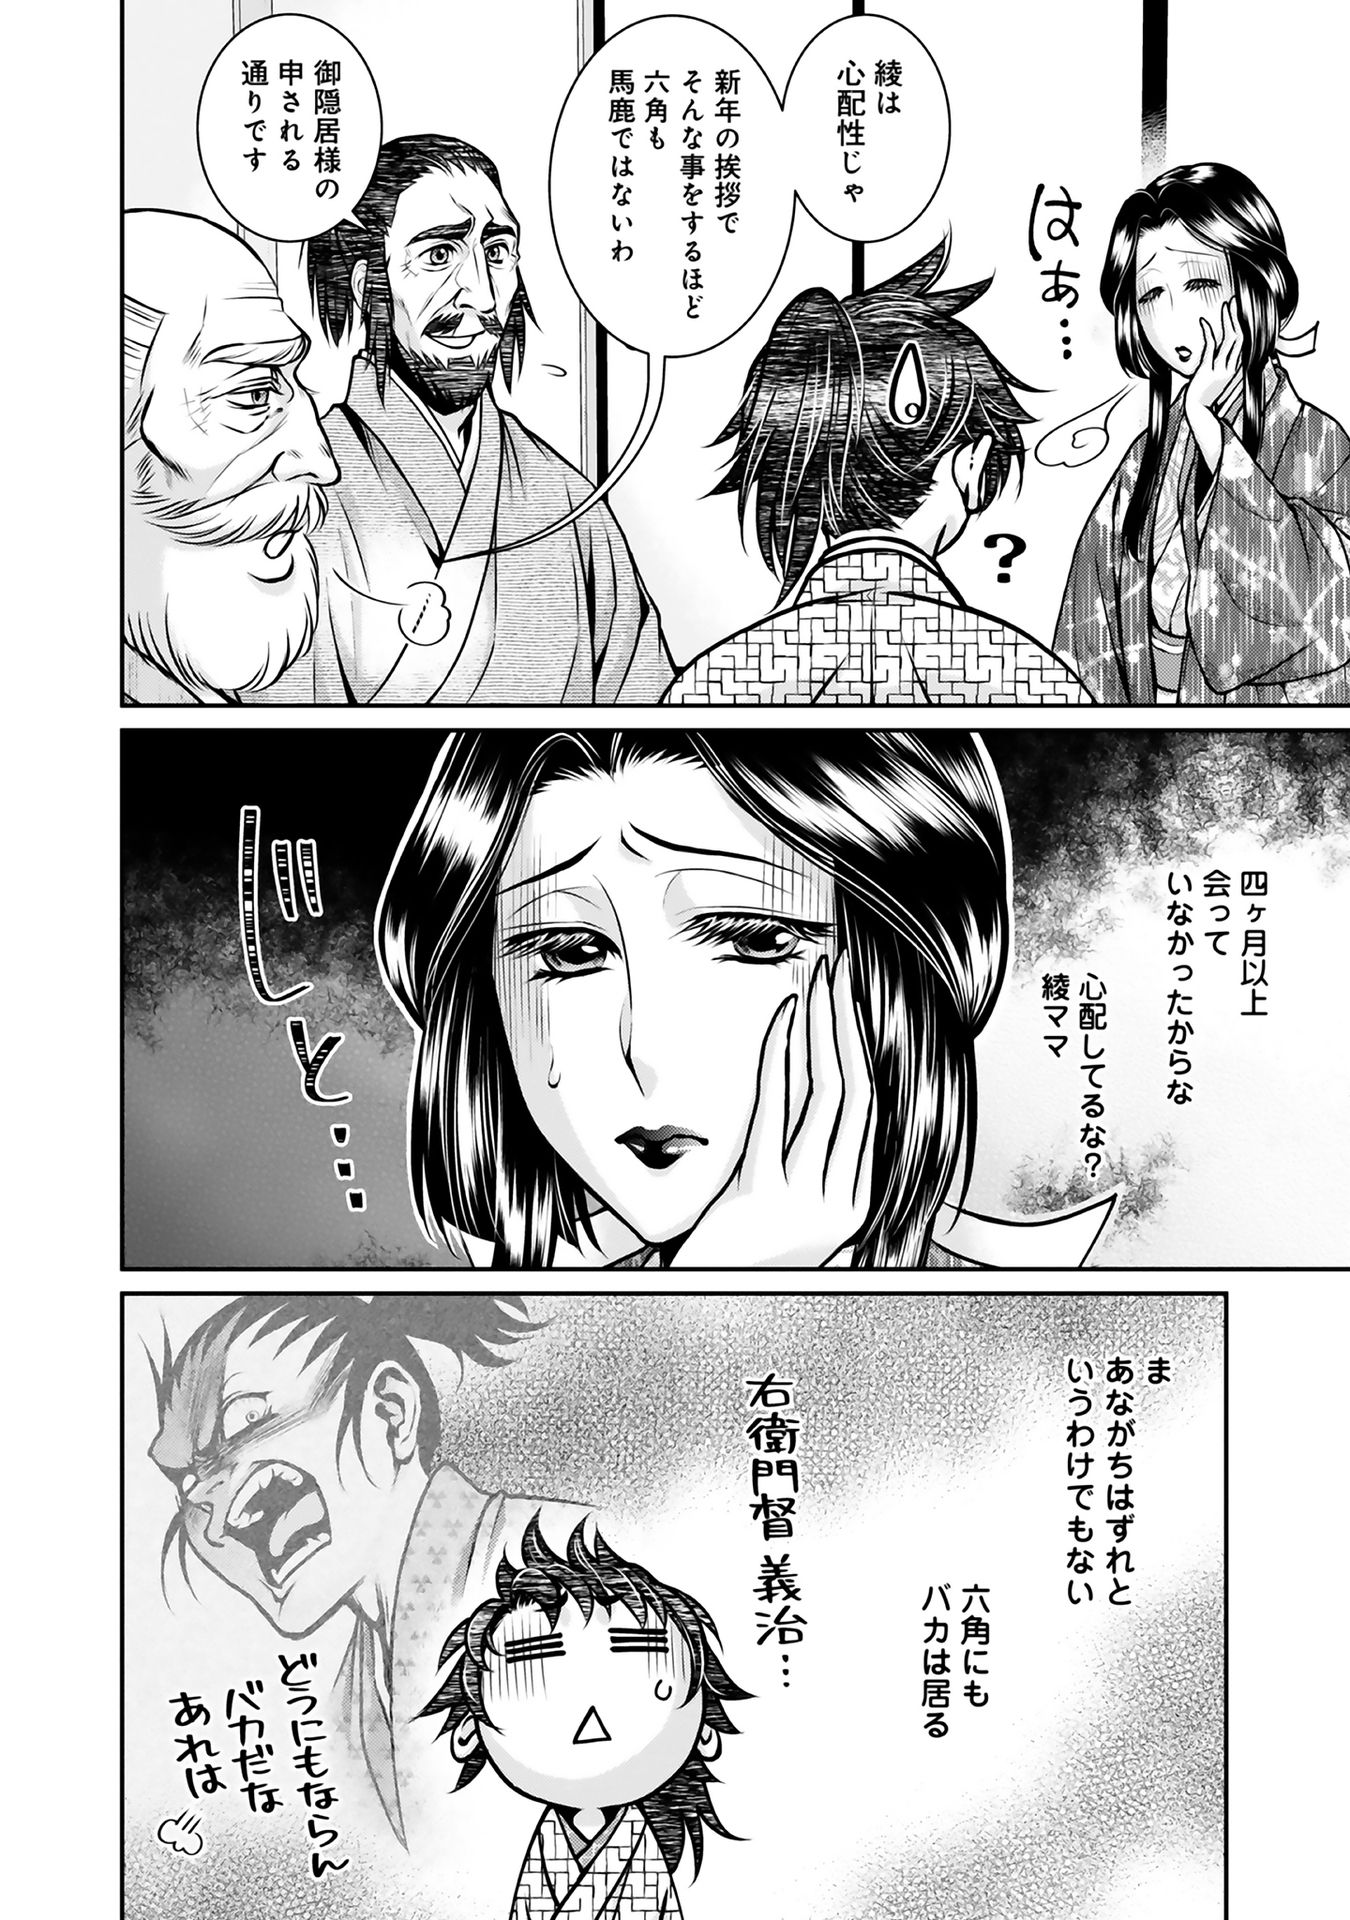 Afumi no Umi – Minamo ga Yureru Toki - Chapter 10 - Page 2